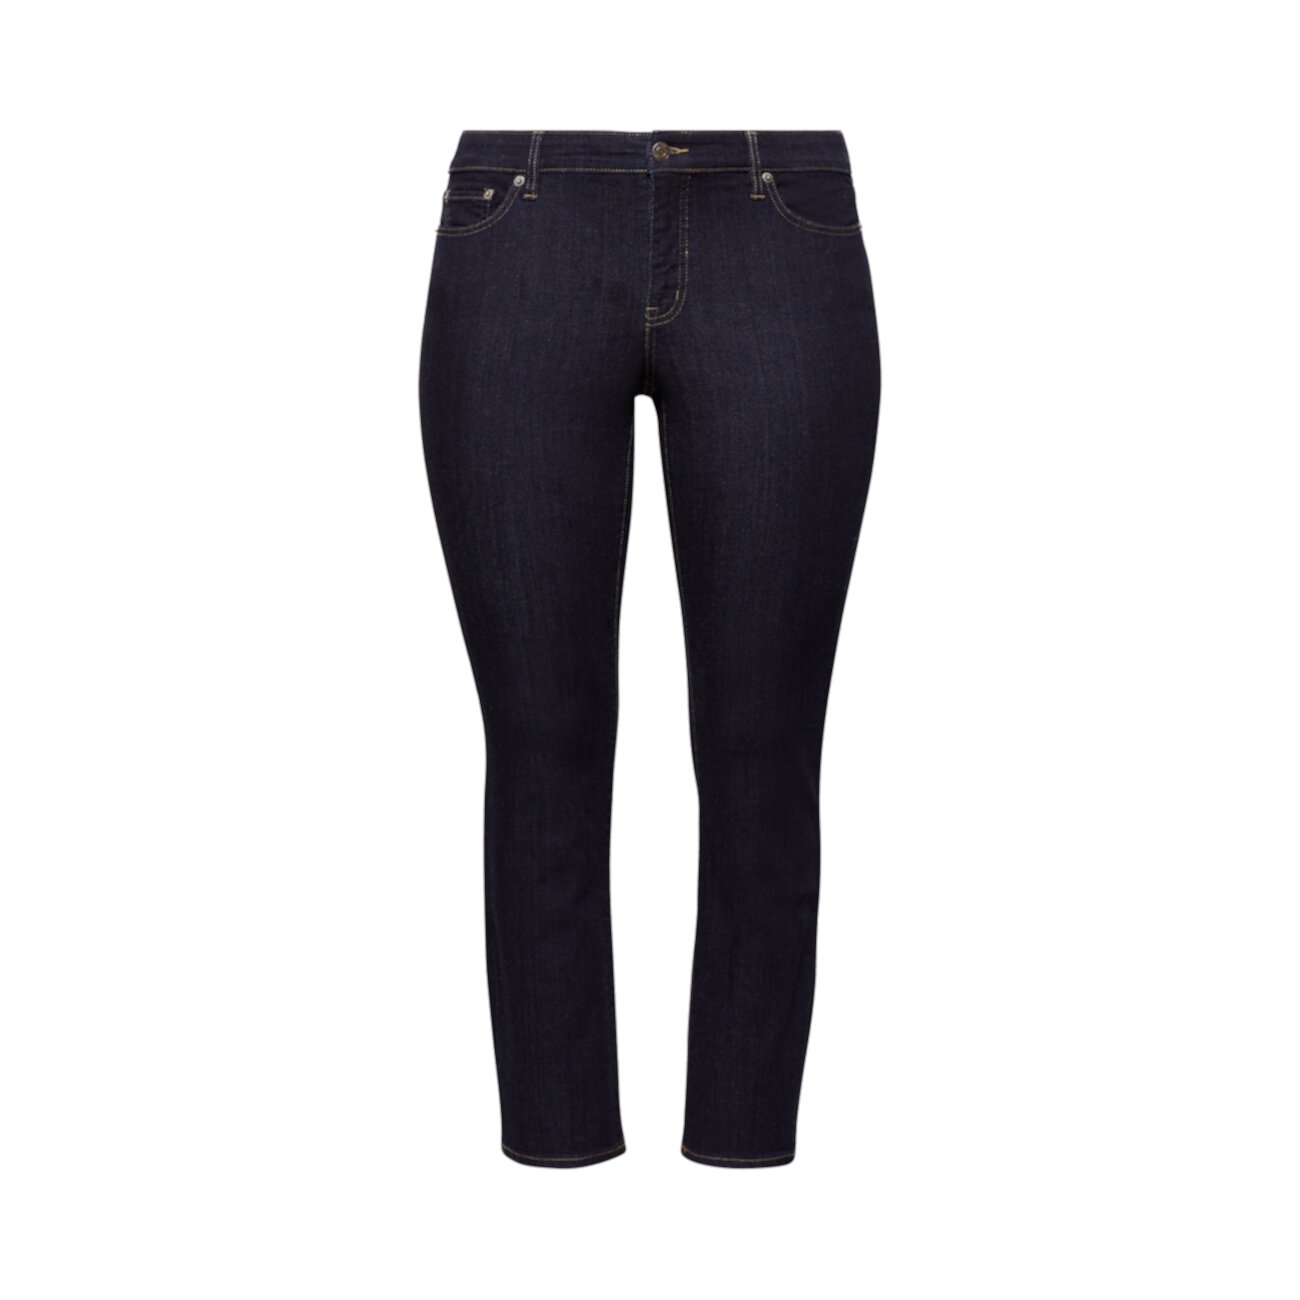 Современные пышные джинсы для похудения Ralph Lauren